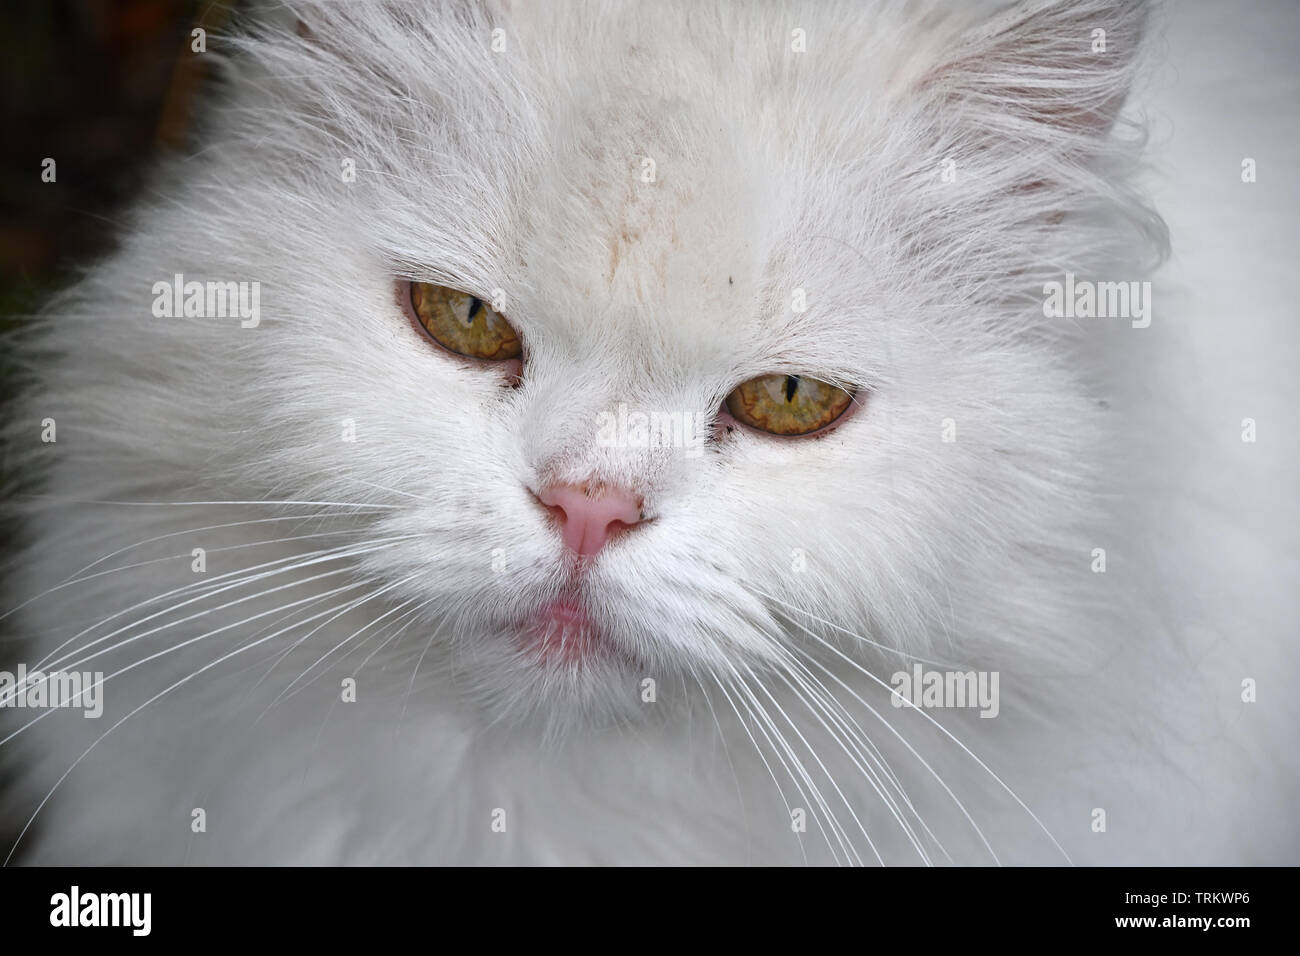 Schließen Sie herauf Frontseite Porträt einer niedlichen weißen Hauskatze mit gelben Augen, an der Kamera suchen, Low Angle View Stockfoto